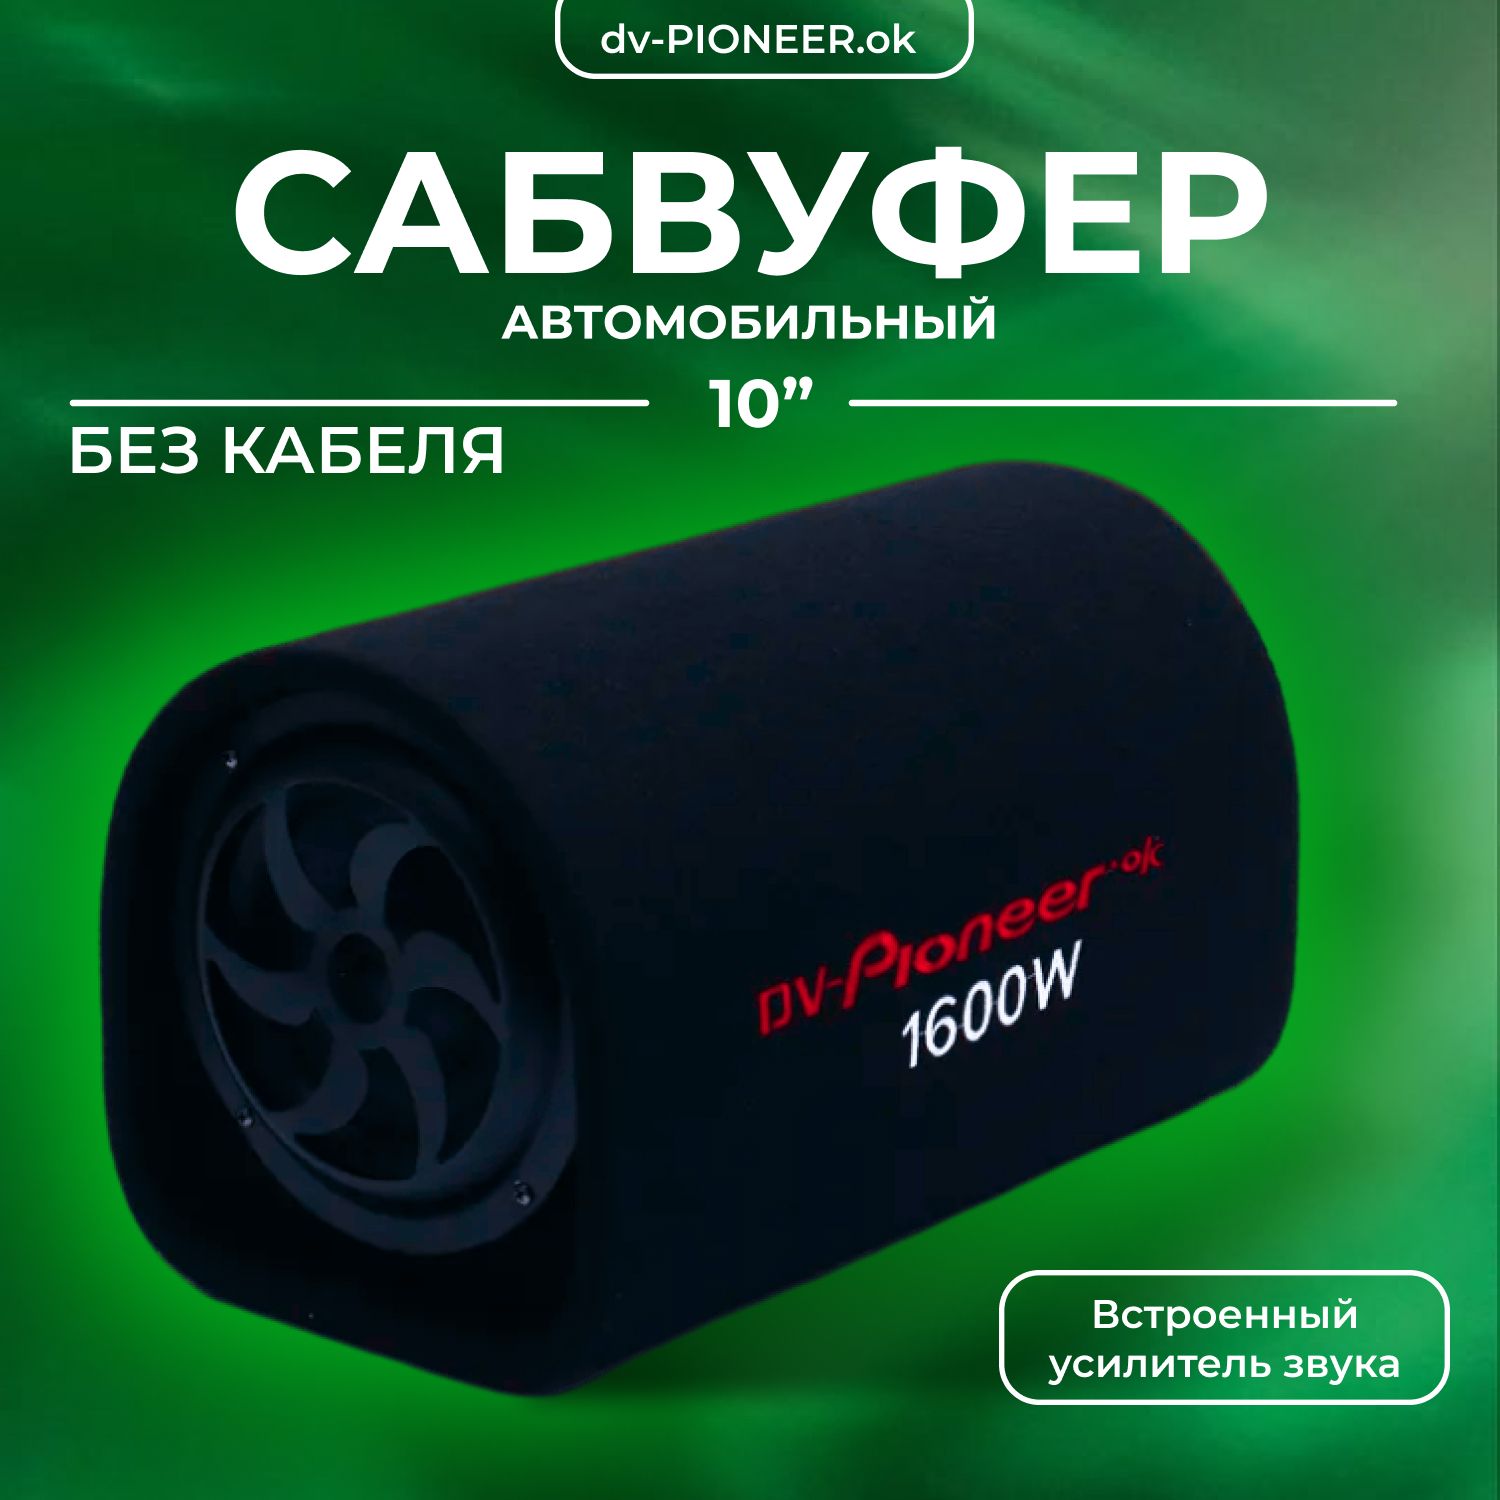 Журнал АвтоЗвук – обзор автоакустики, автомобильной аудио- и видеотехники - luchistii-sudak.ru